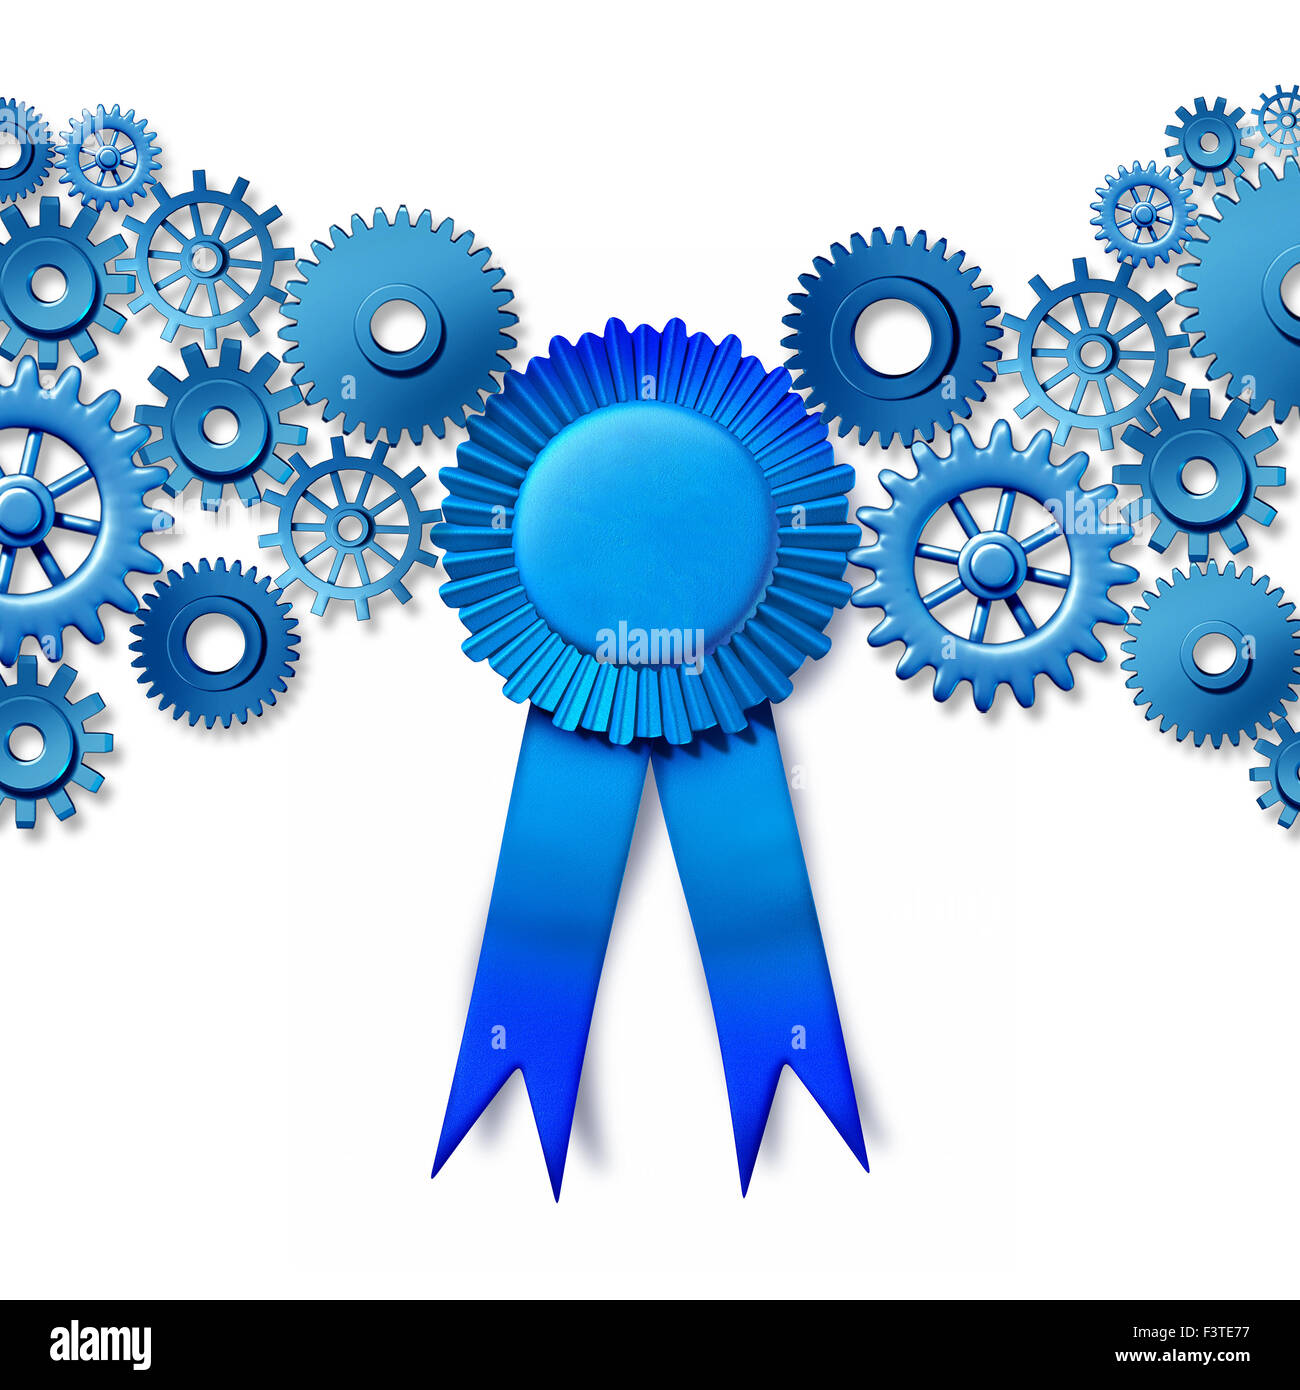 Business Award concept comme un ruban bleu récompense tournant connecté  Engrenages et roues cog comme une industrie honneur pour travailler le  leadership et l'efficacité optimale de la technologie Photo Stock - Alamy